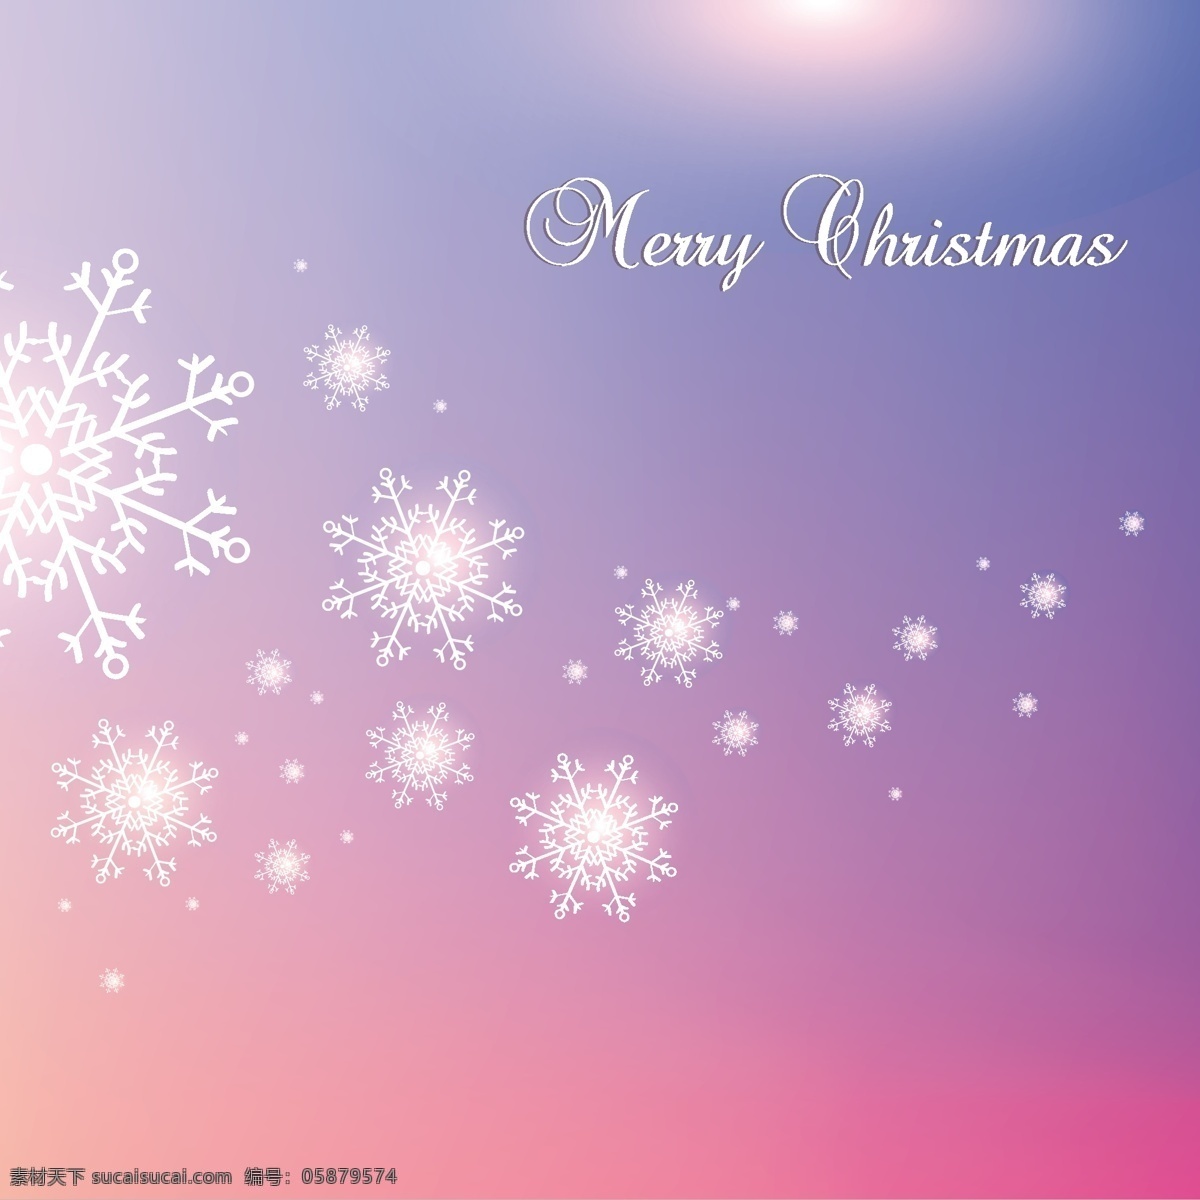 梦幻 背景 雪花 圣诞节 矢量 节日 紫色 粉色 闪光 星辰 圆点 手写 英文 儿童 装饰 图案